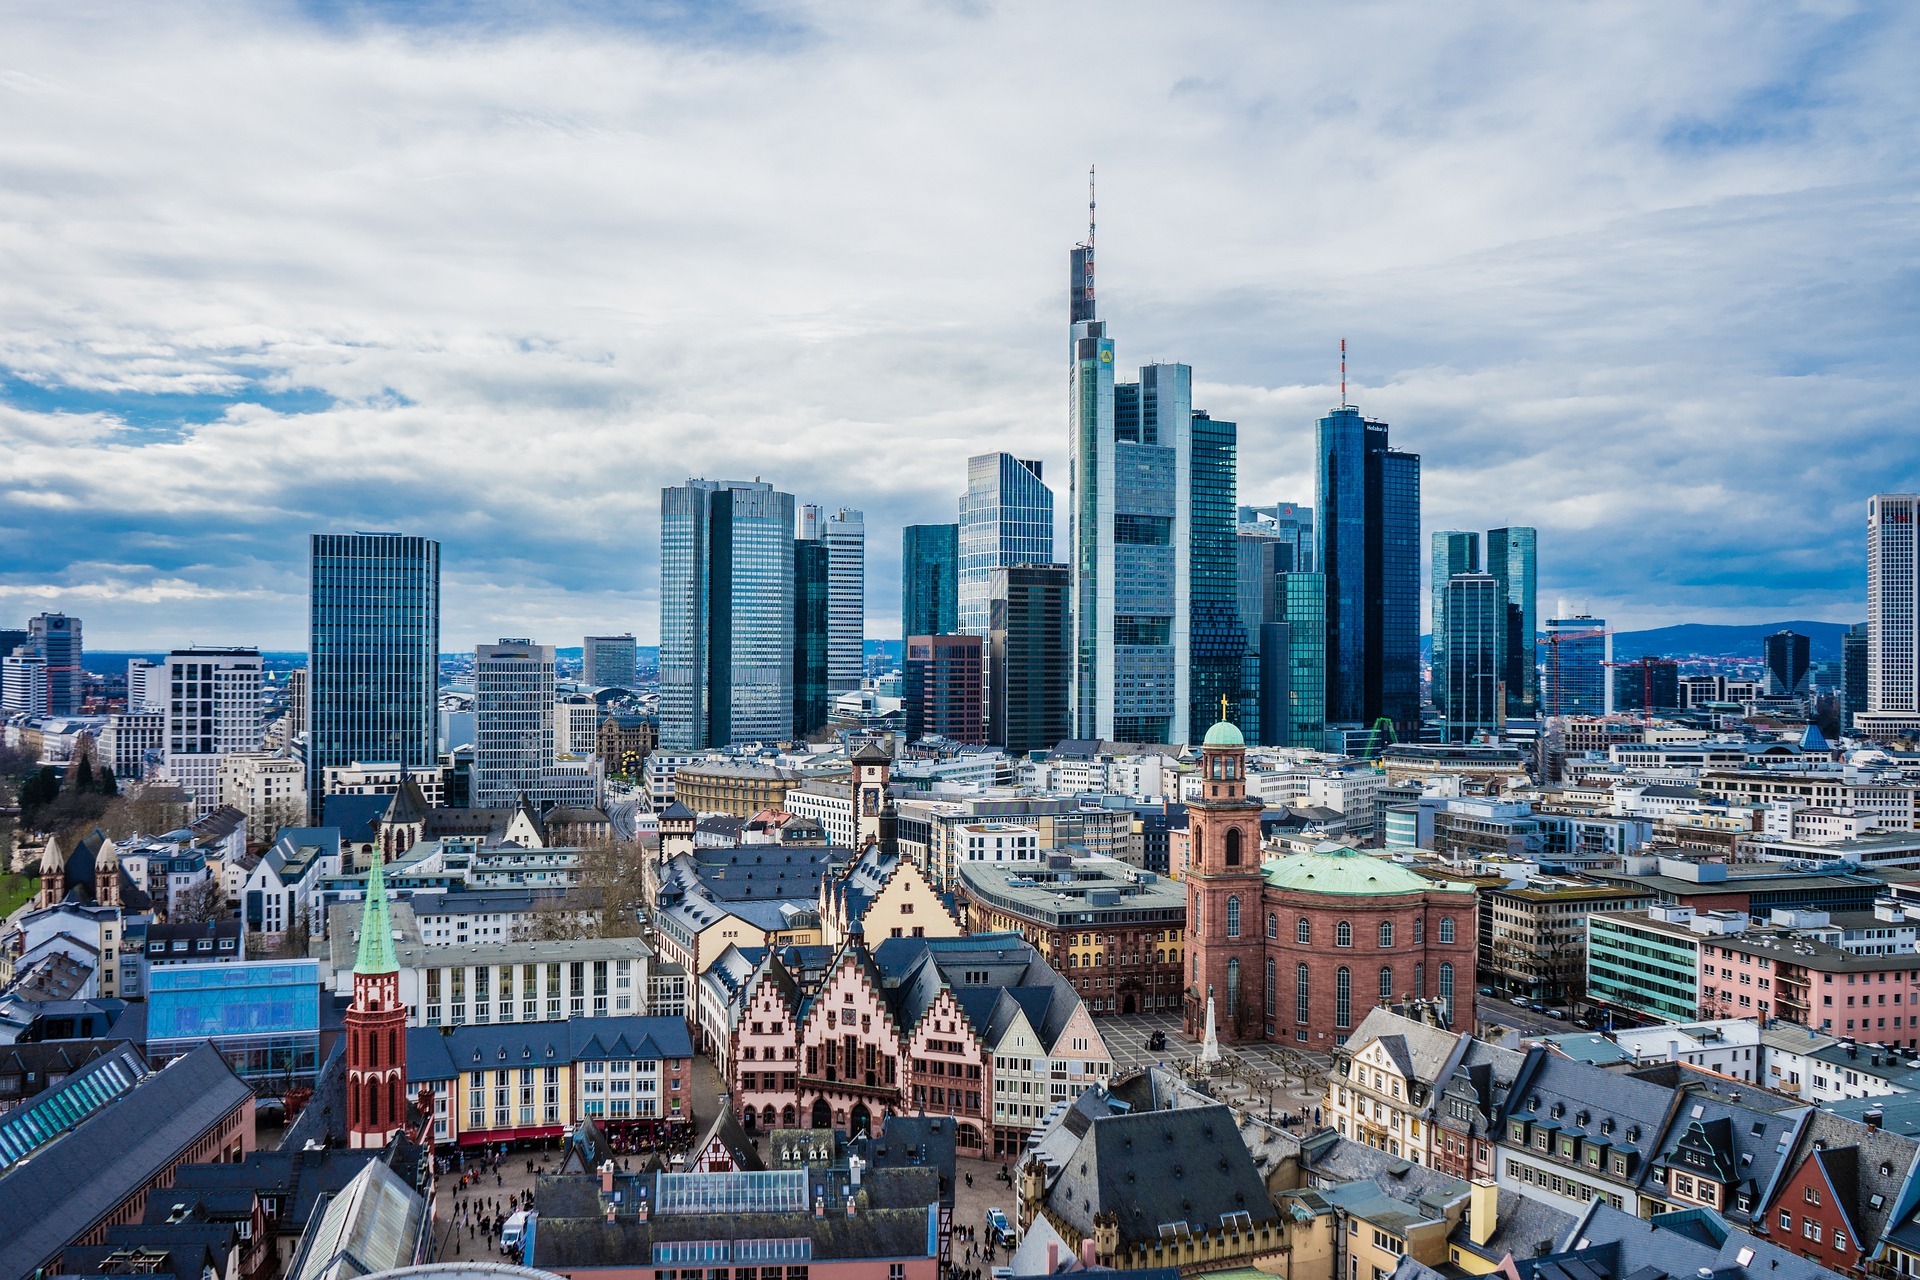 Immobilienmarkt Deutschland: Wie attraktiv sind deutsche Großstädte für Investoren?